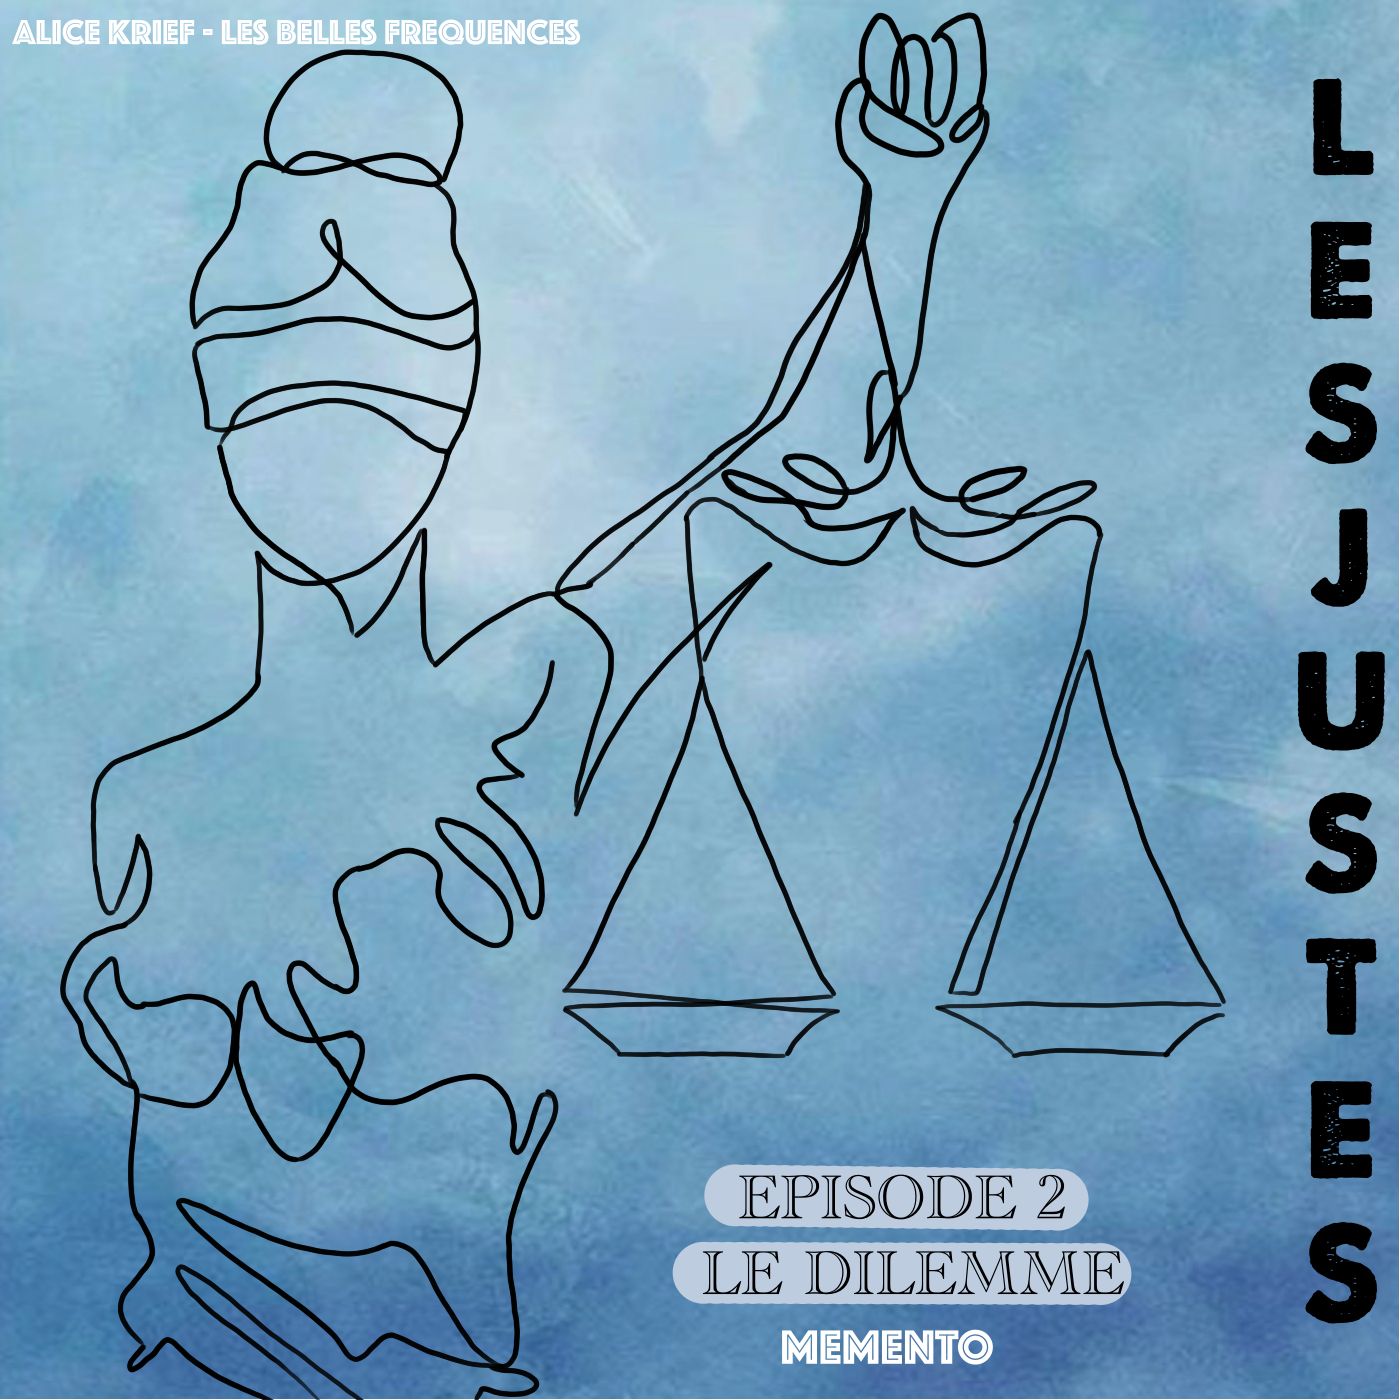 [FICTION ] LES JUSTES d'Albert Camus  - Episode 2 - Le dilemme  (2/5)